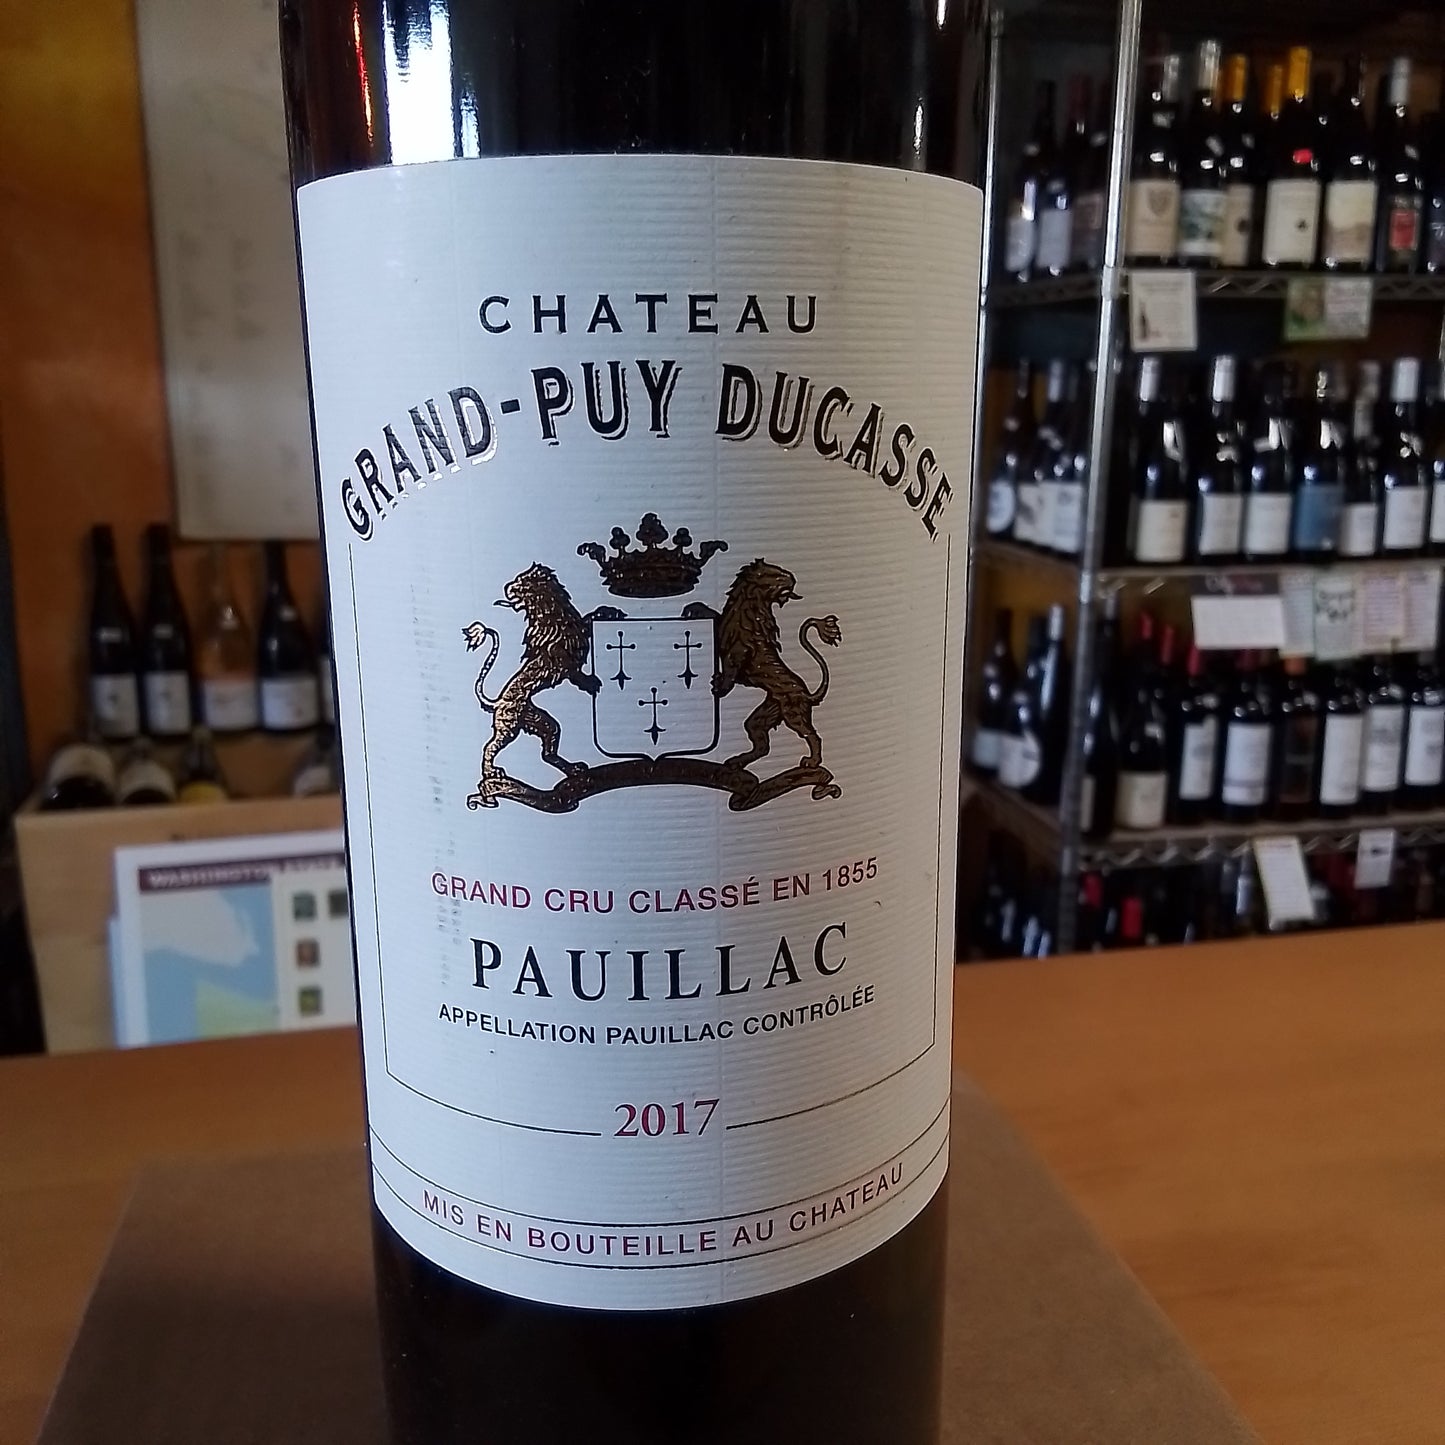 CHATEAU GRAND-PUY DUCASSE 2017 Bordeaux Red Blend (Pauillac, France)